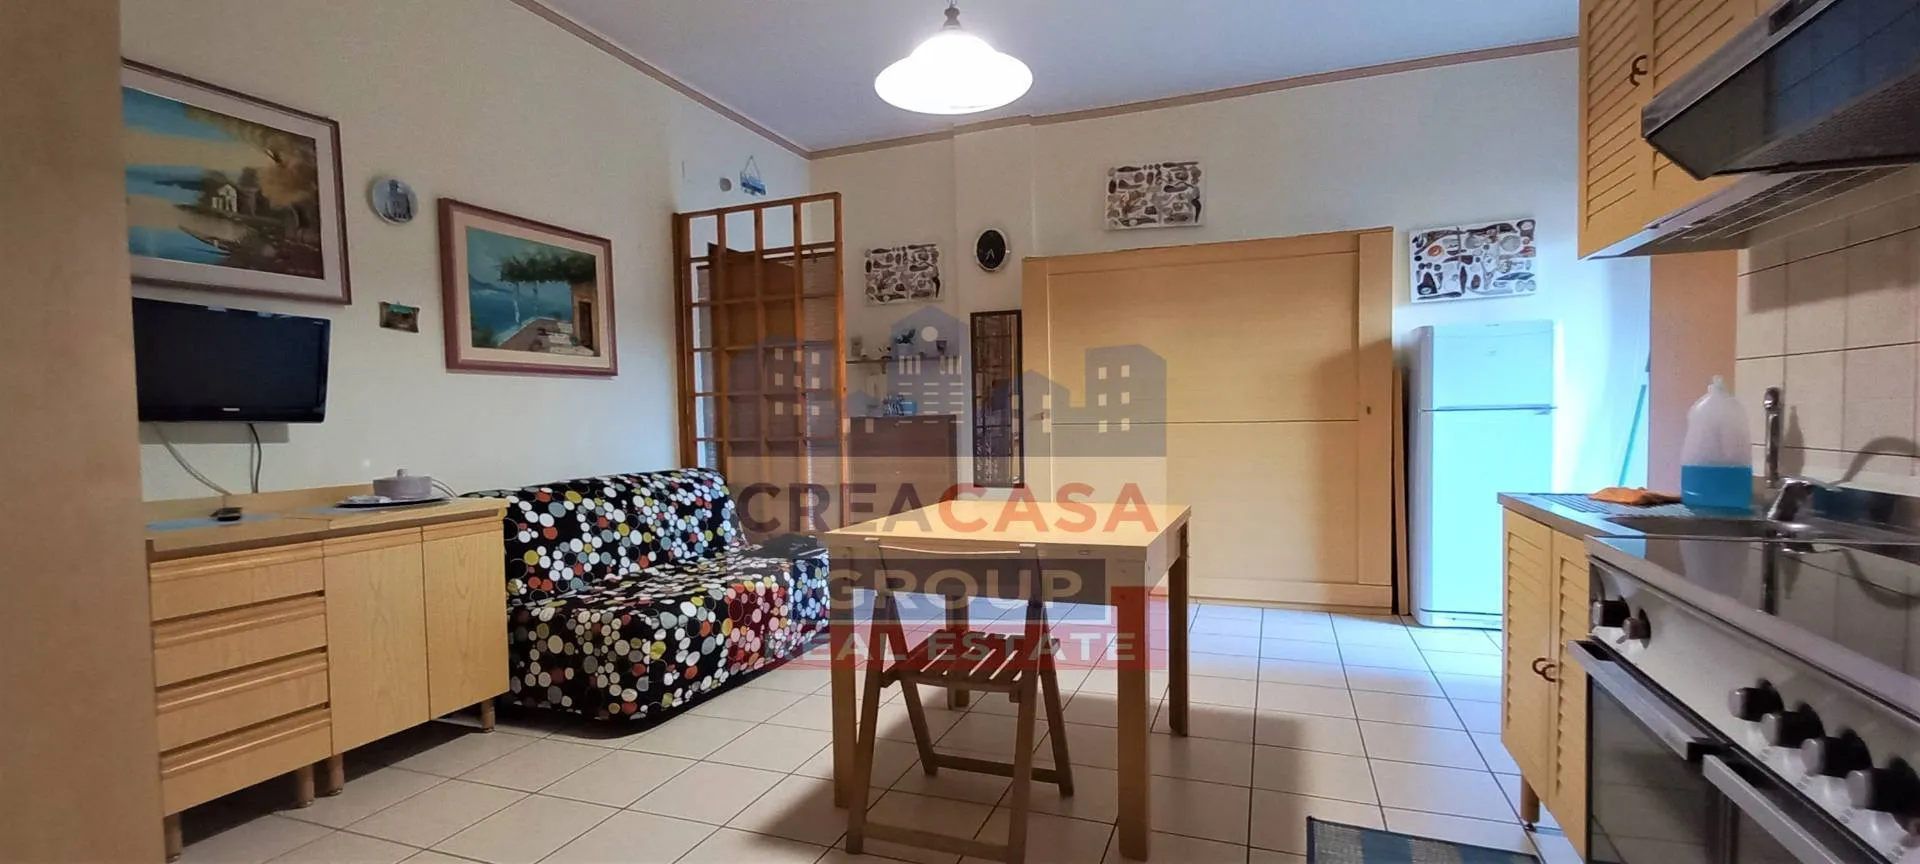 Immagine per Appartamento in vendita a Giardini-Naxos Via porticato